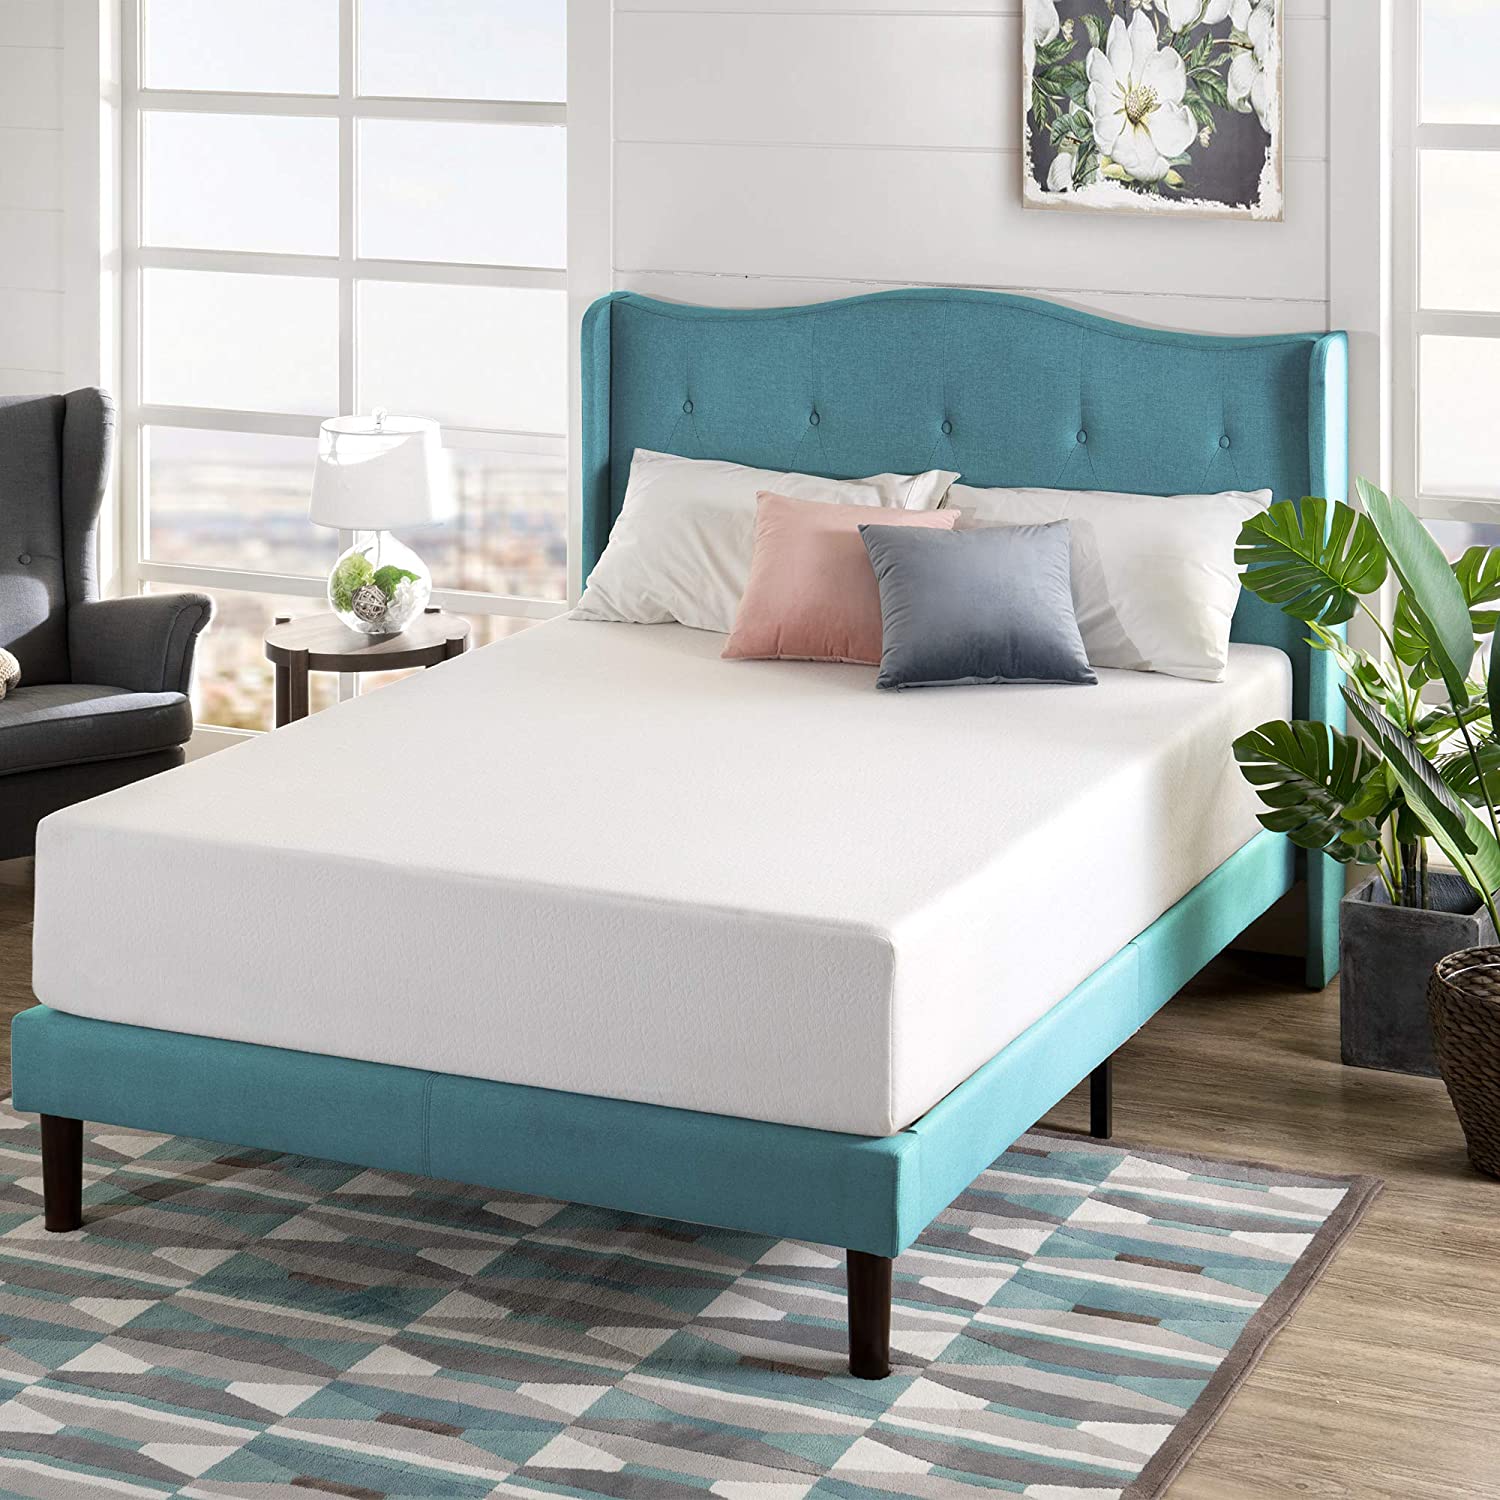 zinus mattress reviews, zinus green tea mattress, zinus bed, zinus memory foam mattress